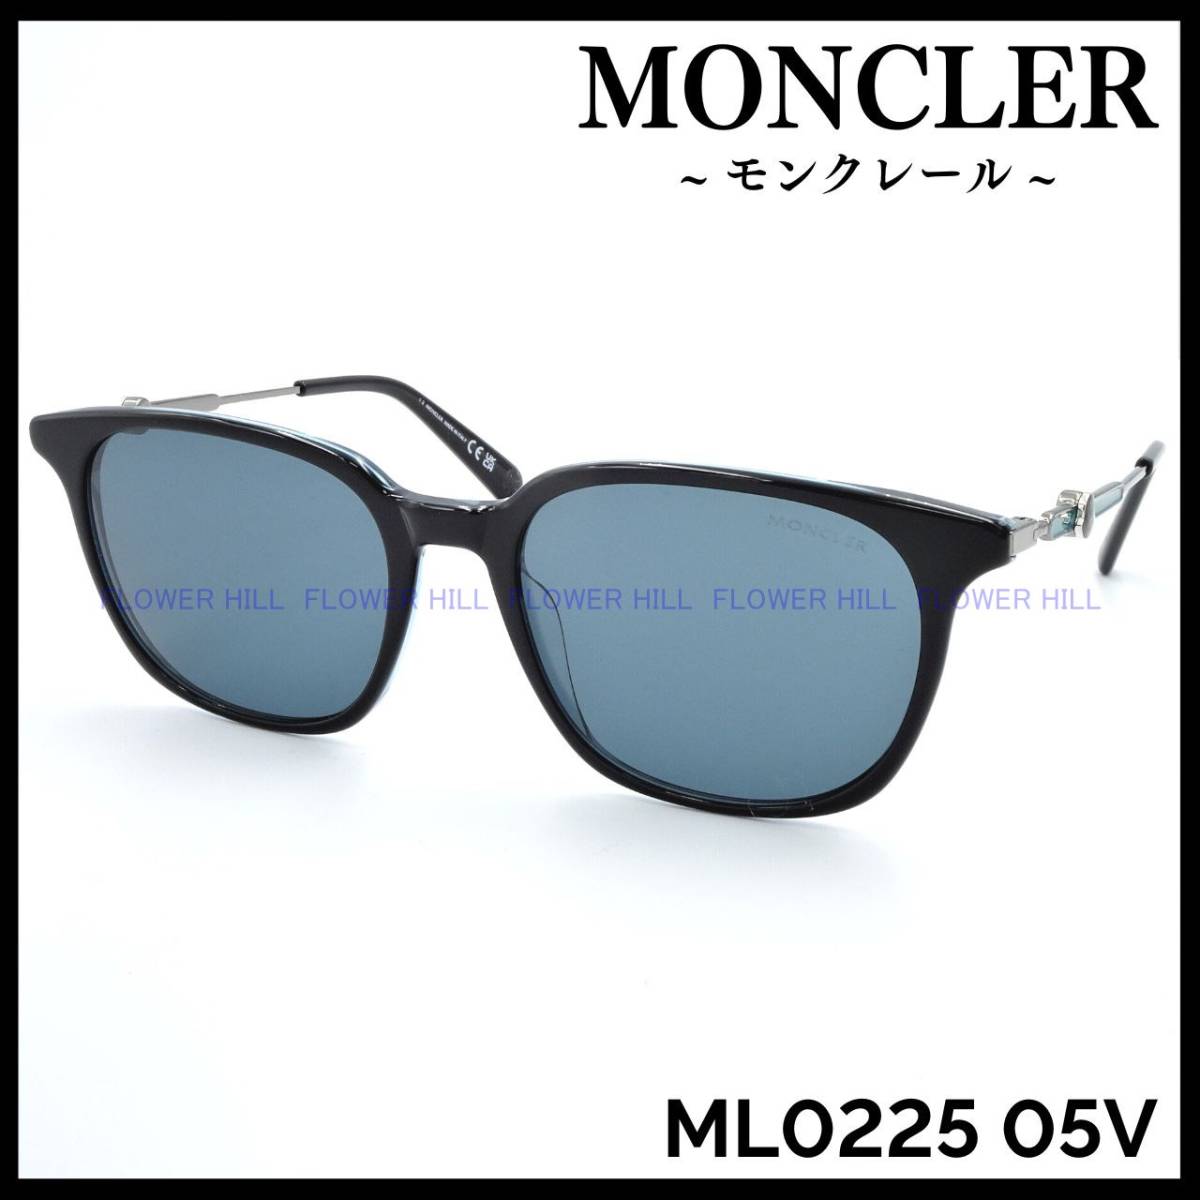 【新品・送料無料】モンクレール MONCLER サングラス ウェリントン ML0225 05V ブラック/クリアーブルー イタリア製 メンズ レディース_画像1